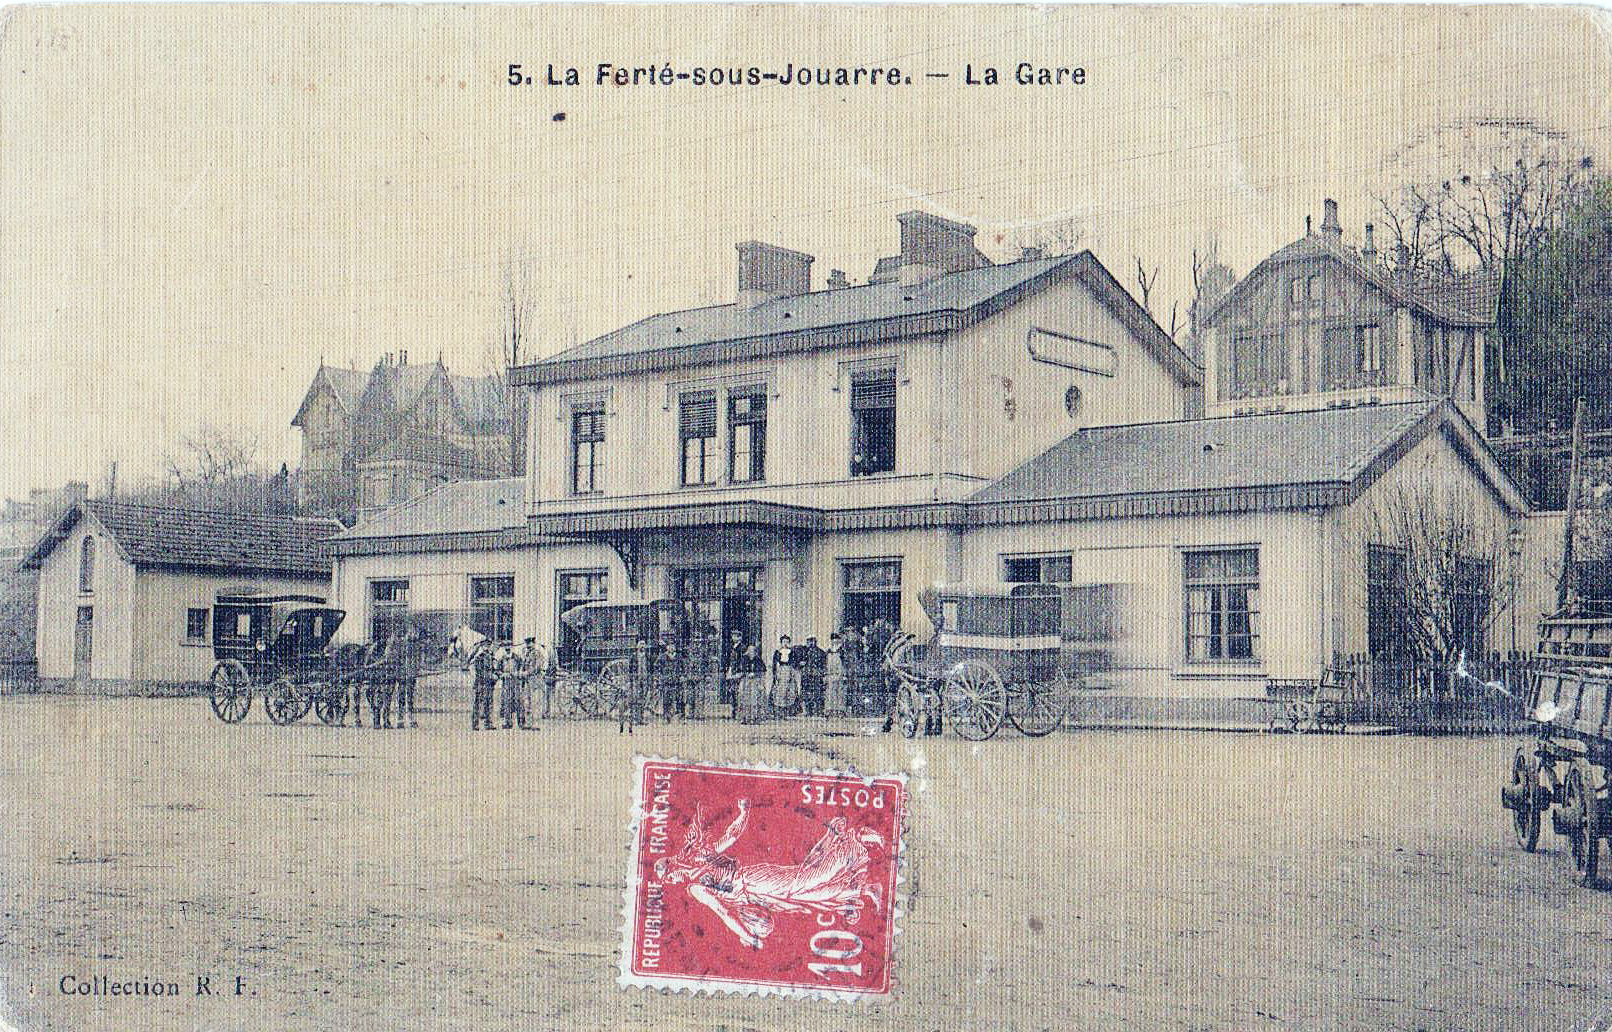 La gare de La Ferté-sous-Jouarre